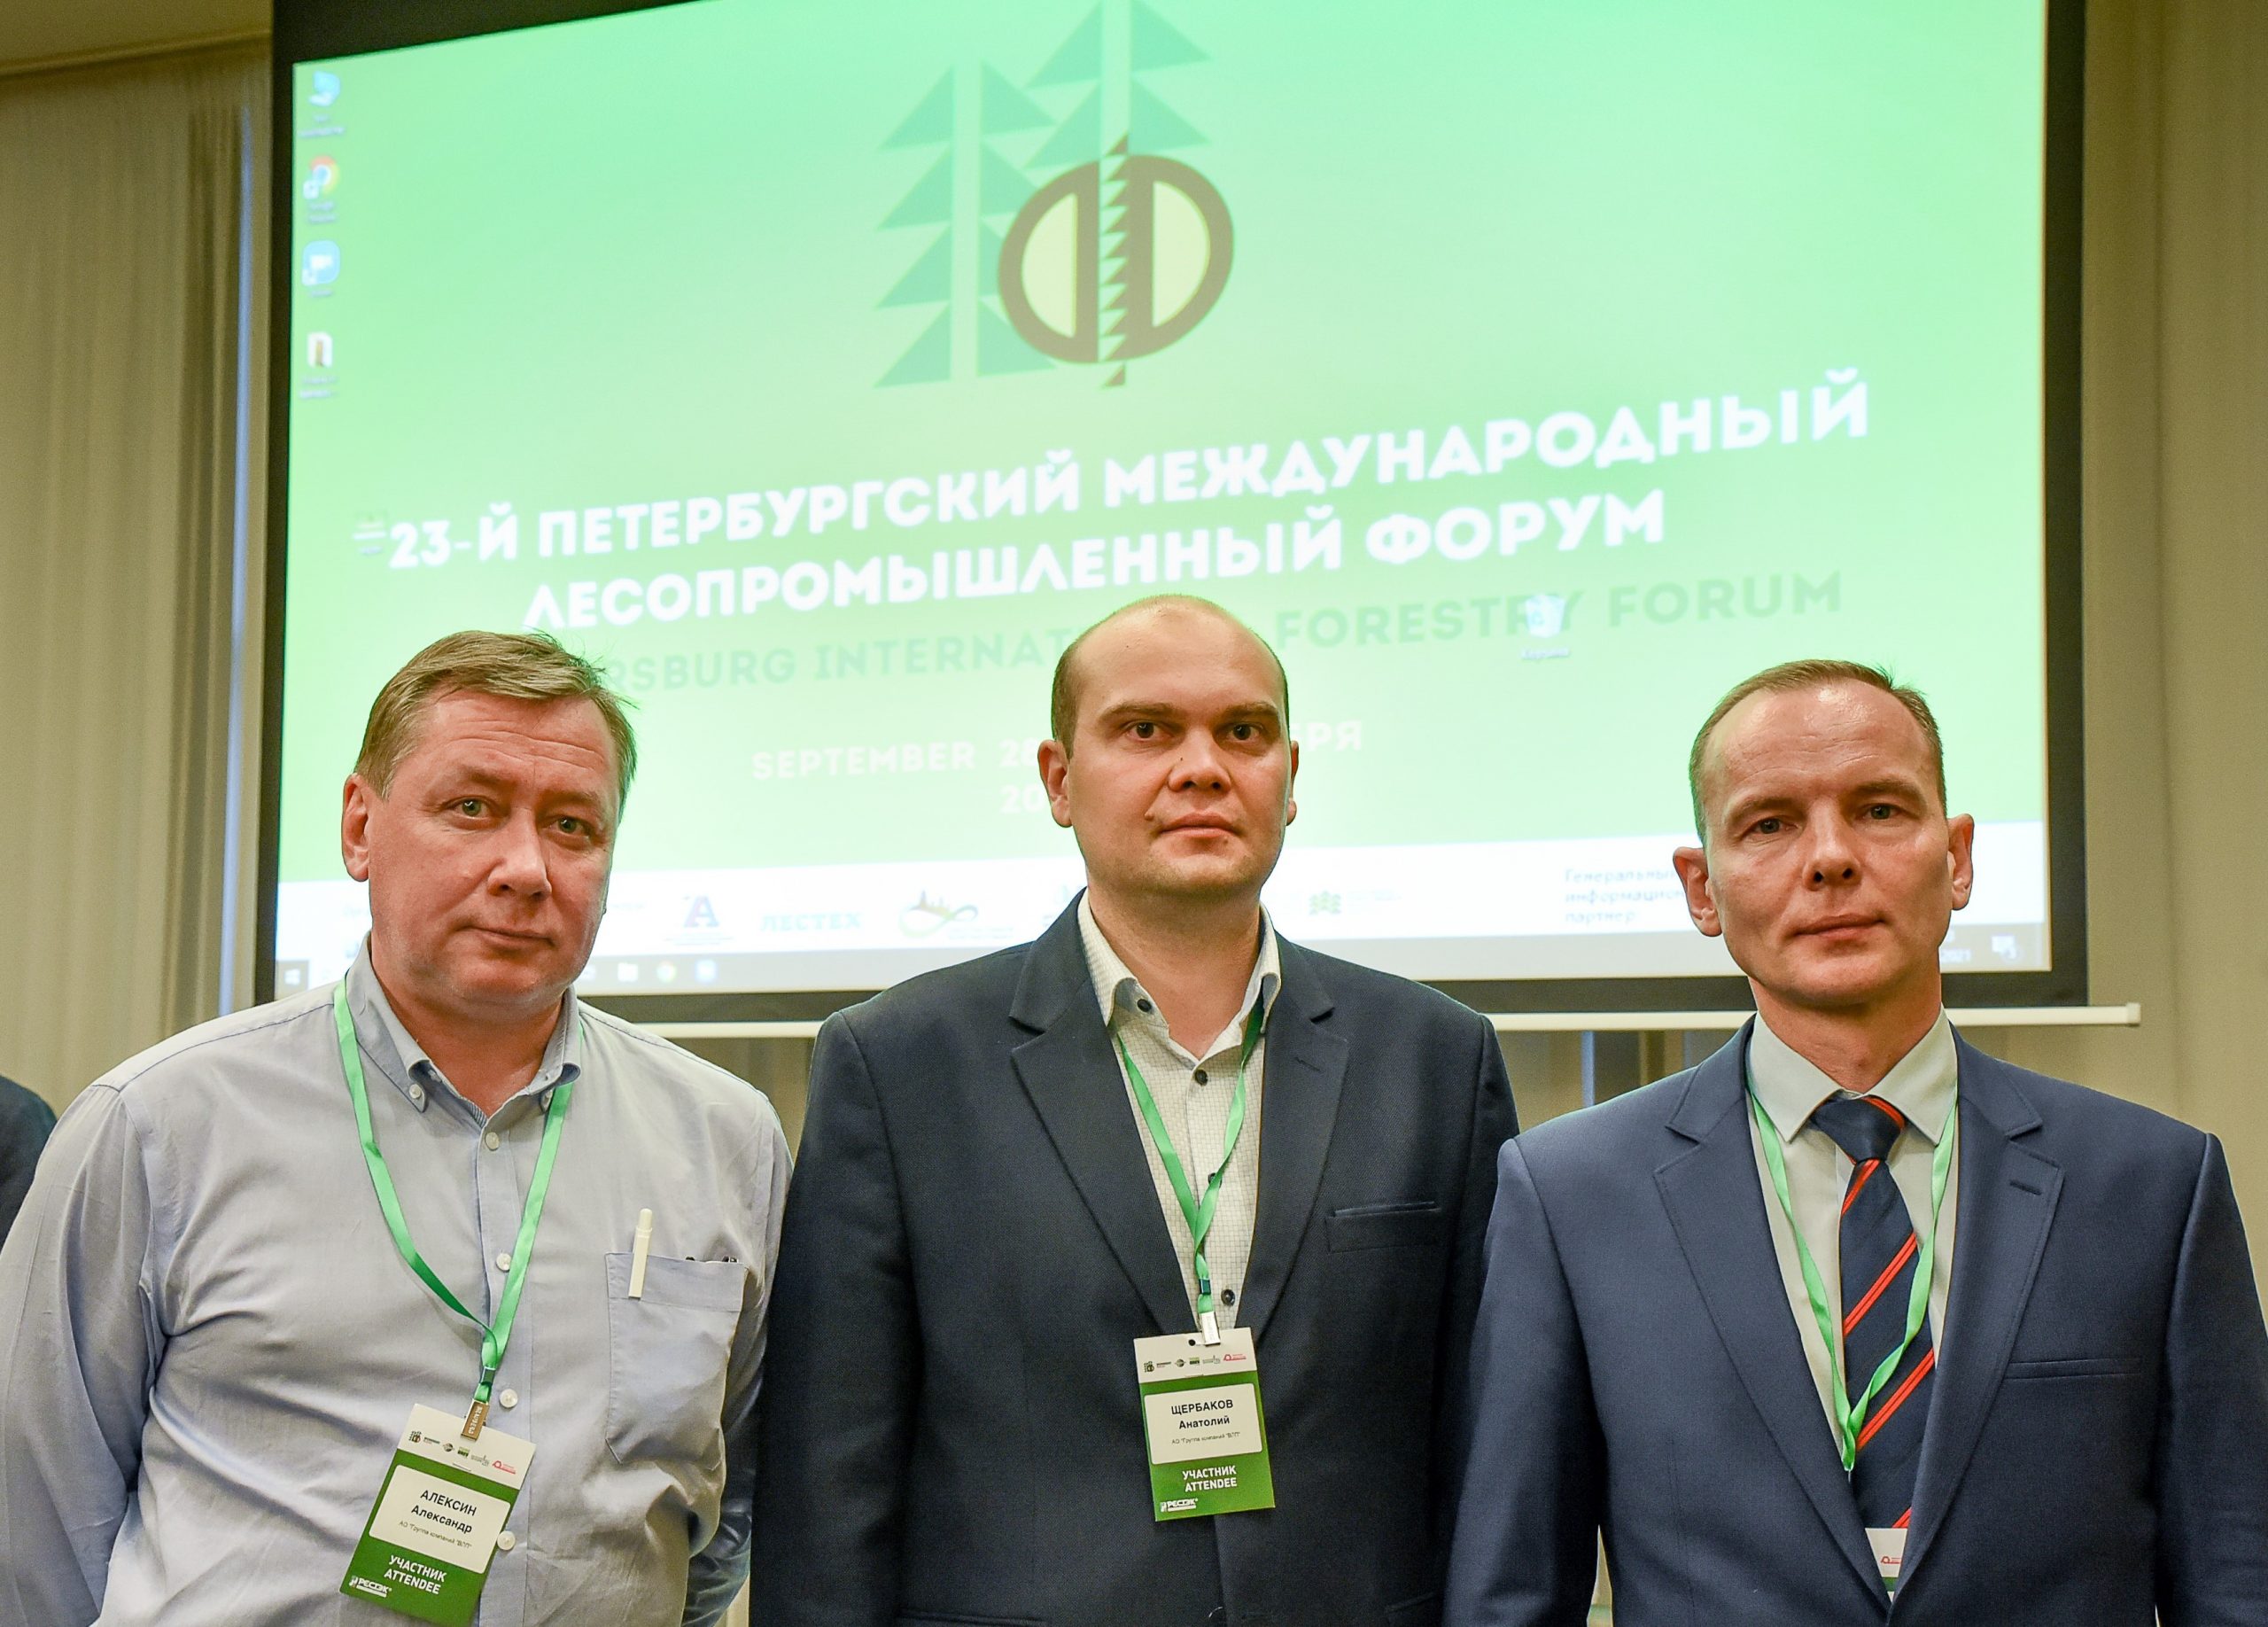 «Вологодские лесопромышленники» посетили 23-й Петербургский Международный лесопромышленный форум